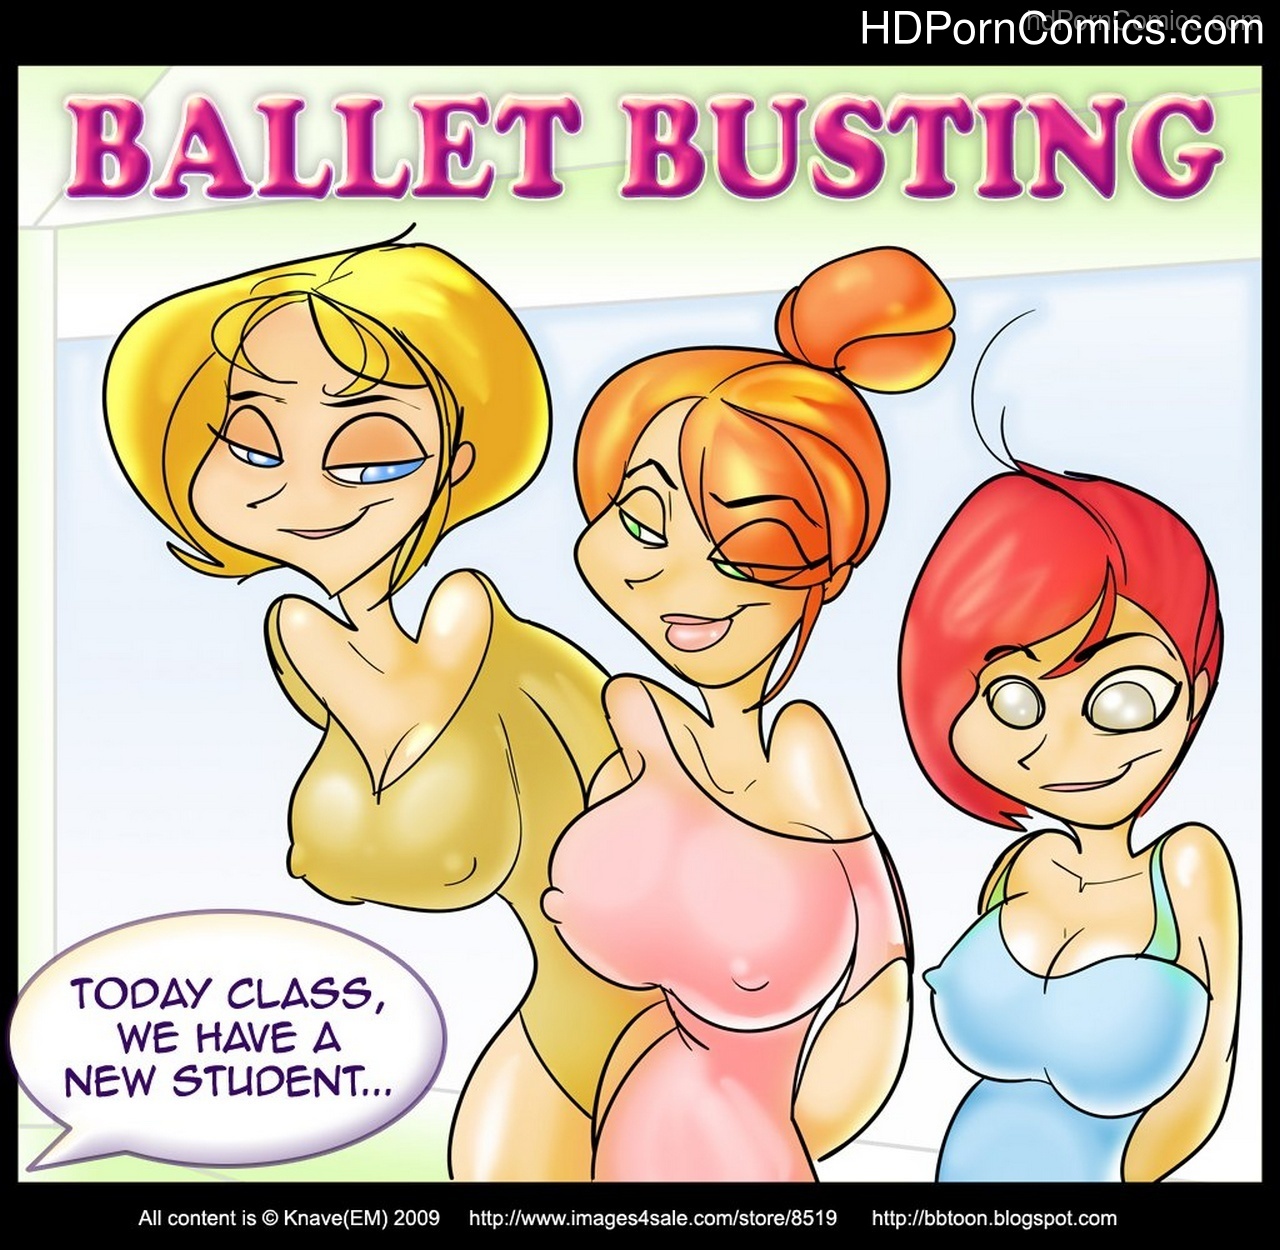 Ballbusting Porn Comics - Ballet Busting comic porn - HD Porn Comics